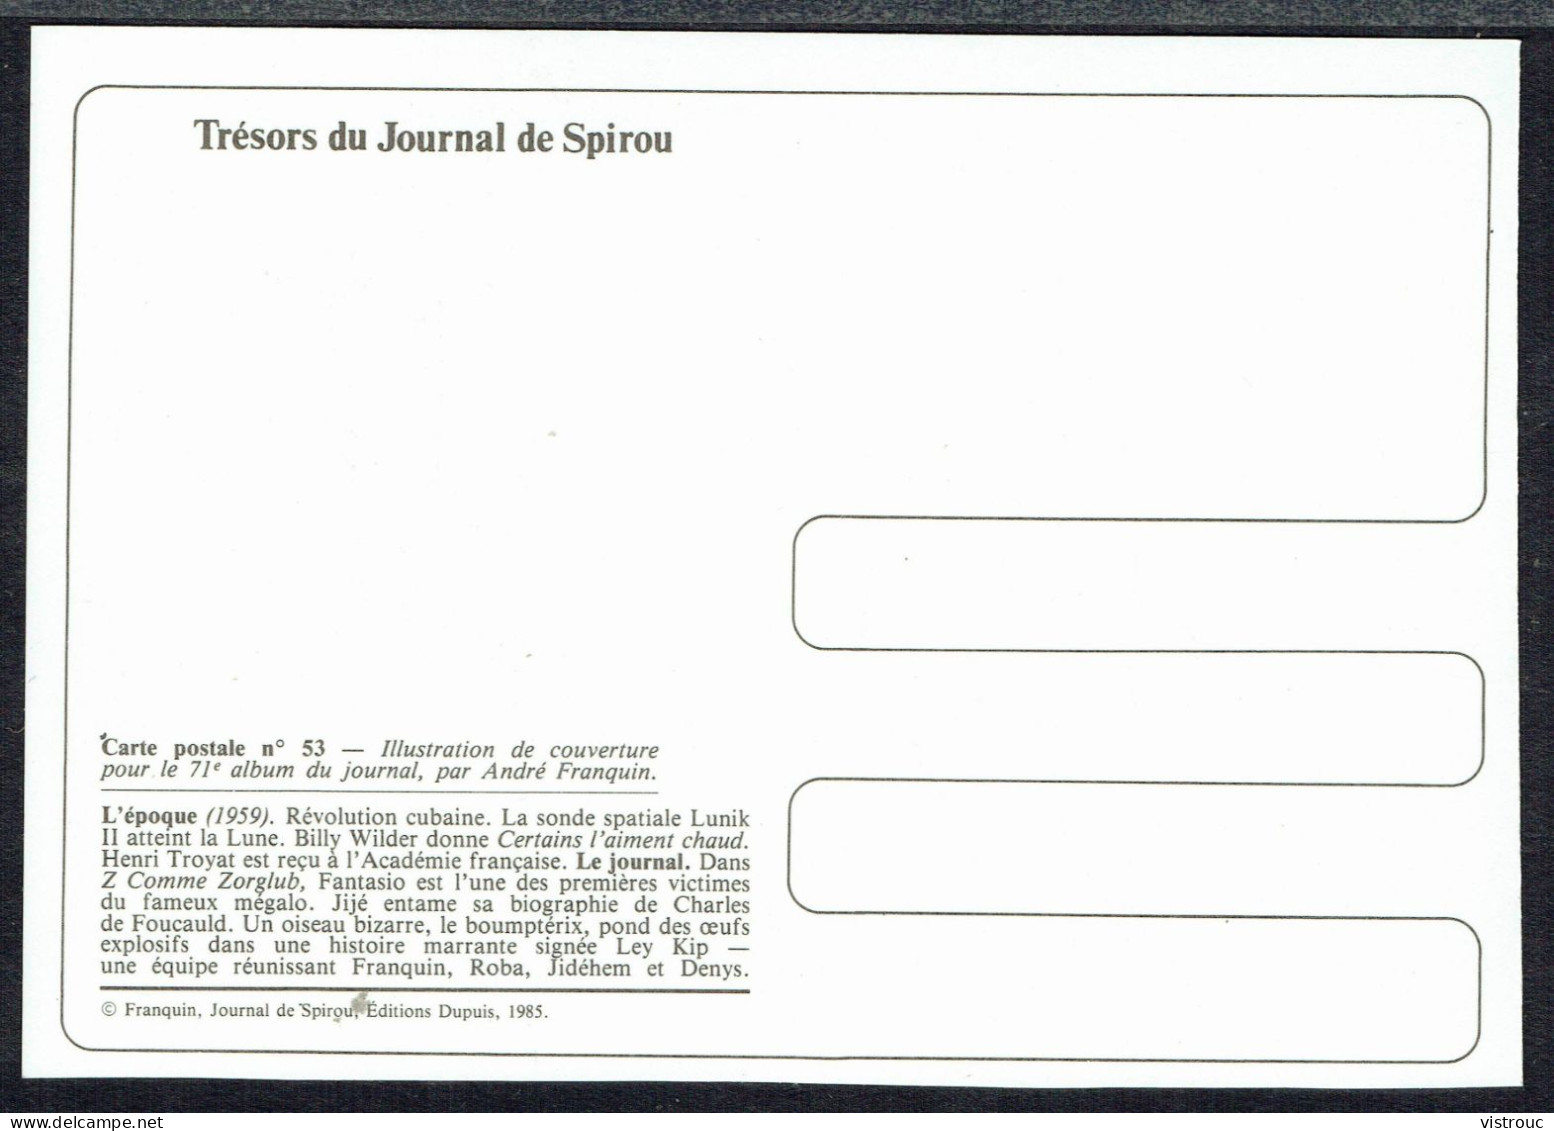 SPIROU - CP N° 53 : Illustration Couverture Album N° 71 De FRANQUIN - Non Circulé - Not Circulated - Ed. DUPUIS - 1985. - Comicfiguren